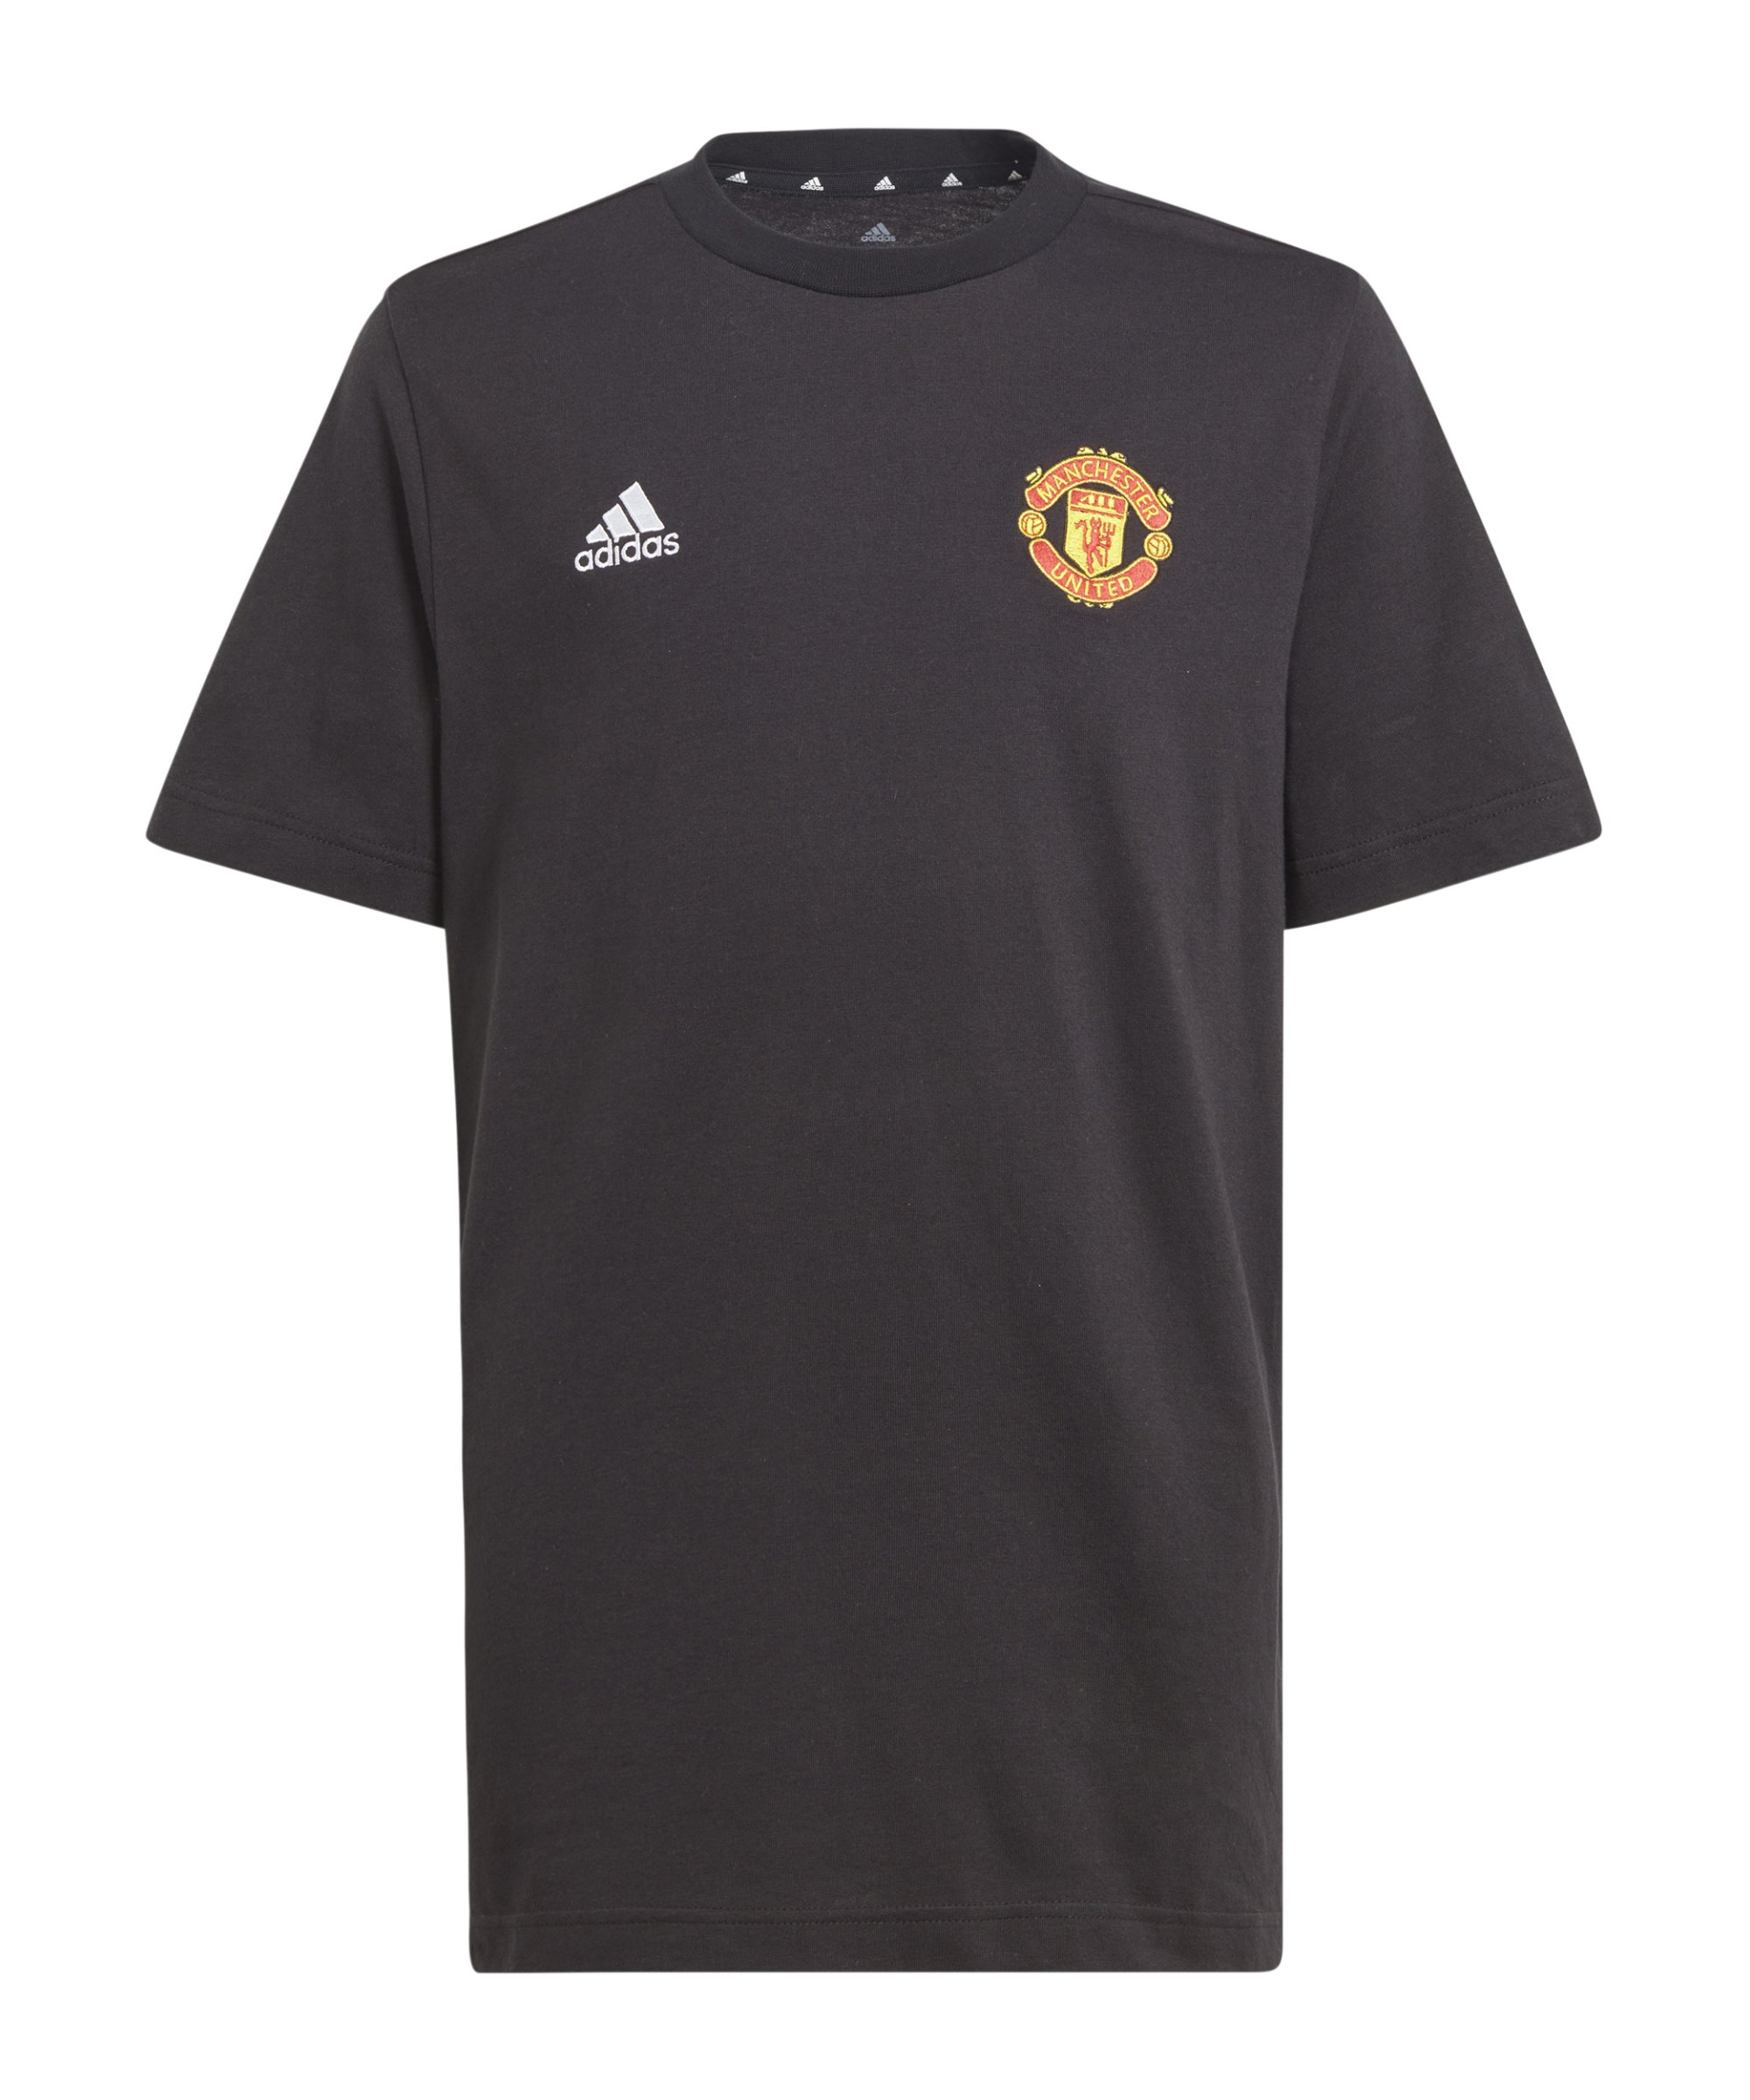 adidas Manchester United Graphic T-Shirt Kids Schwarz - schwarz